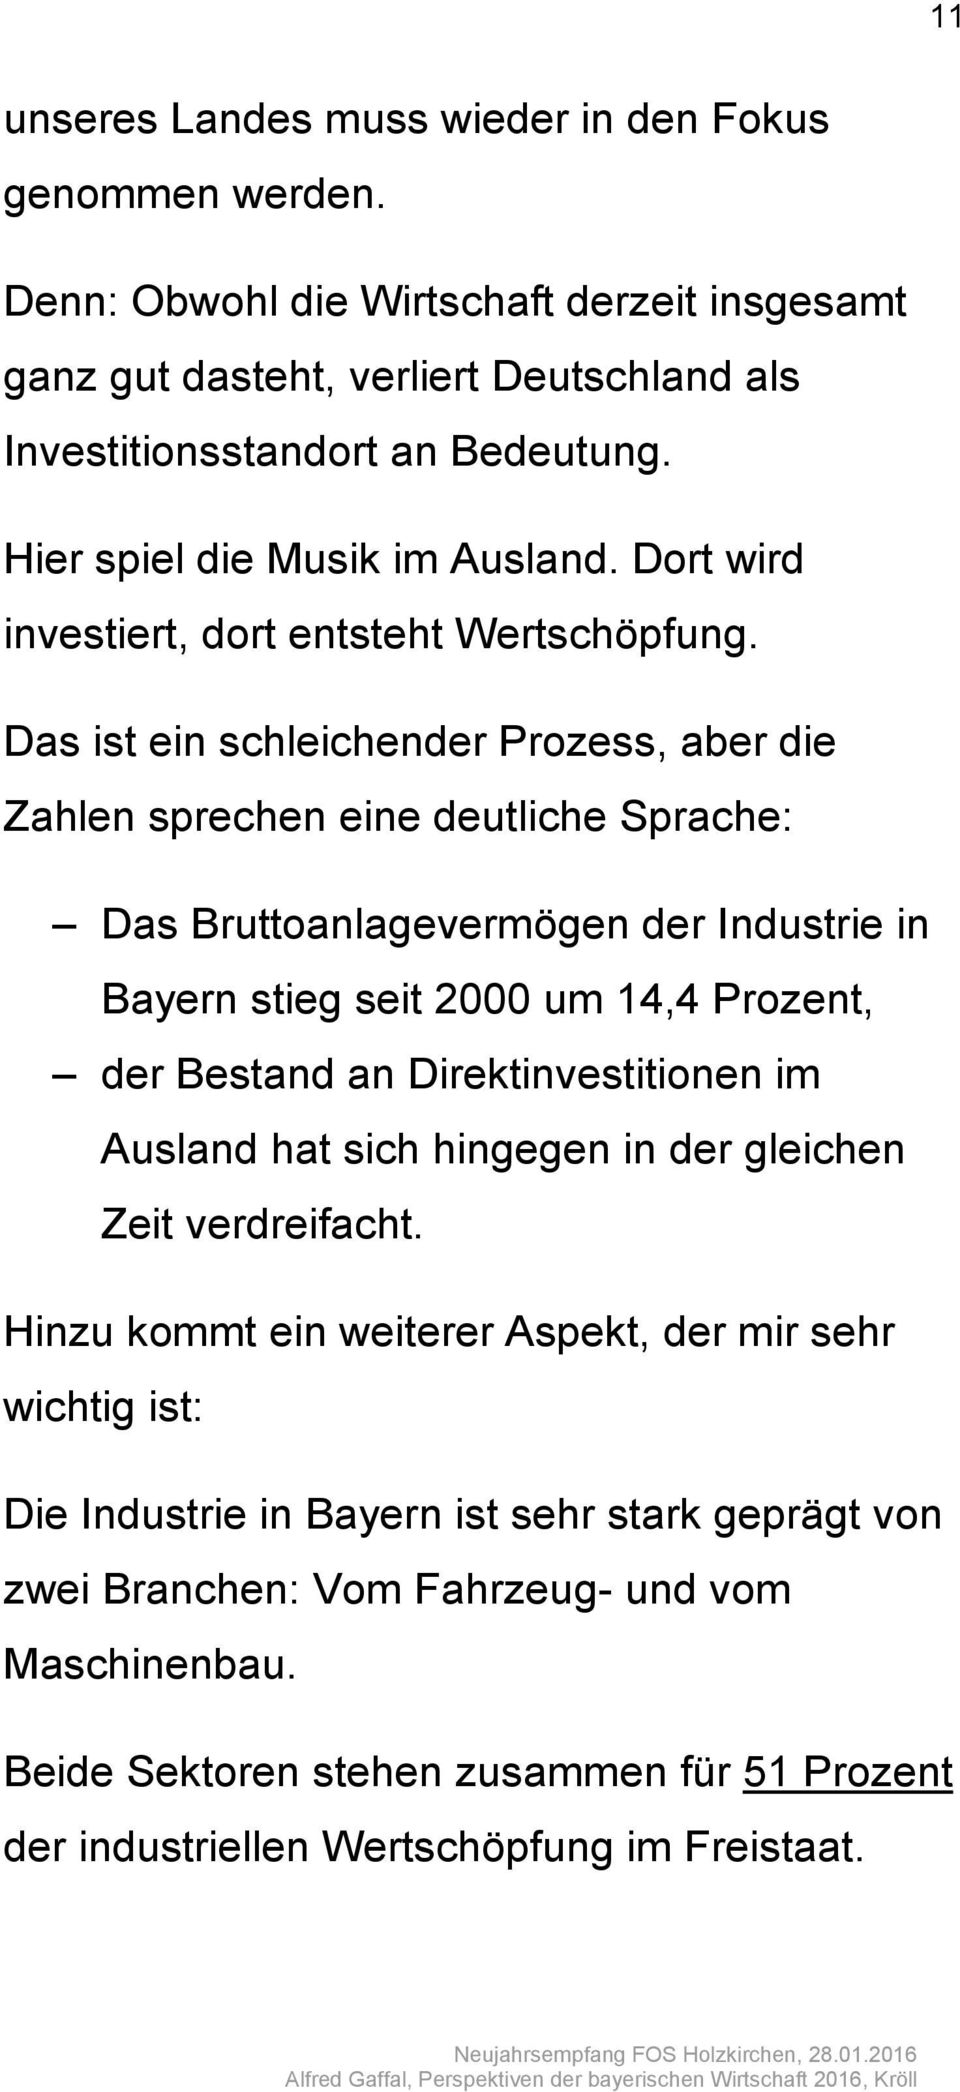 Das ist ein schleichender Prozess, aber die Zahlen sprechen eine deutliche Sprache: Das Bruttoanlagevermögen der Industrie in Bayern stieg seit 2000 um 14,4 Prozent, der Bestand an